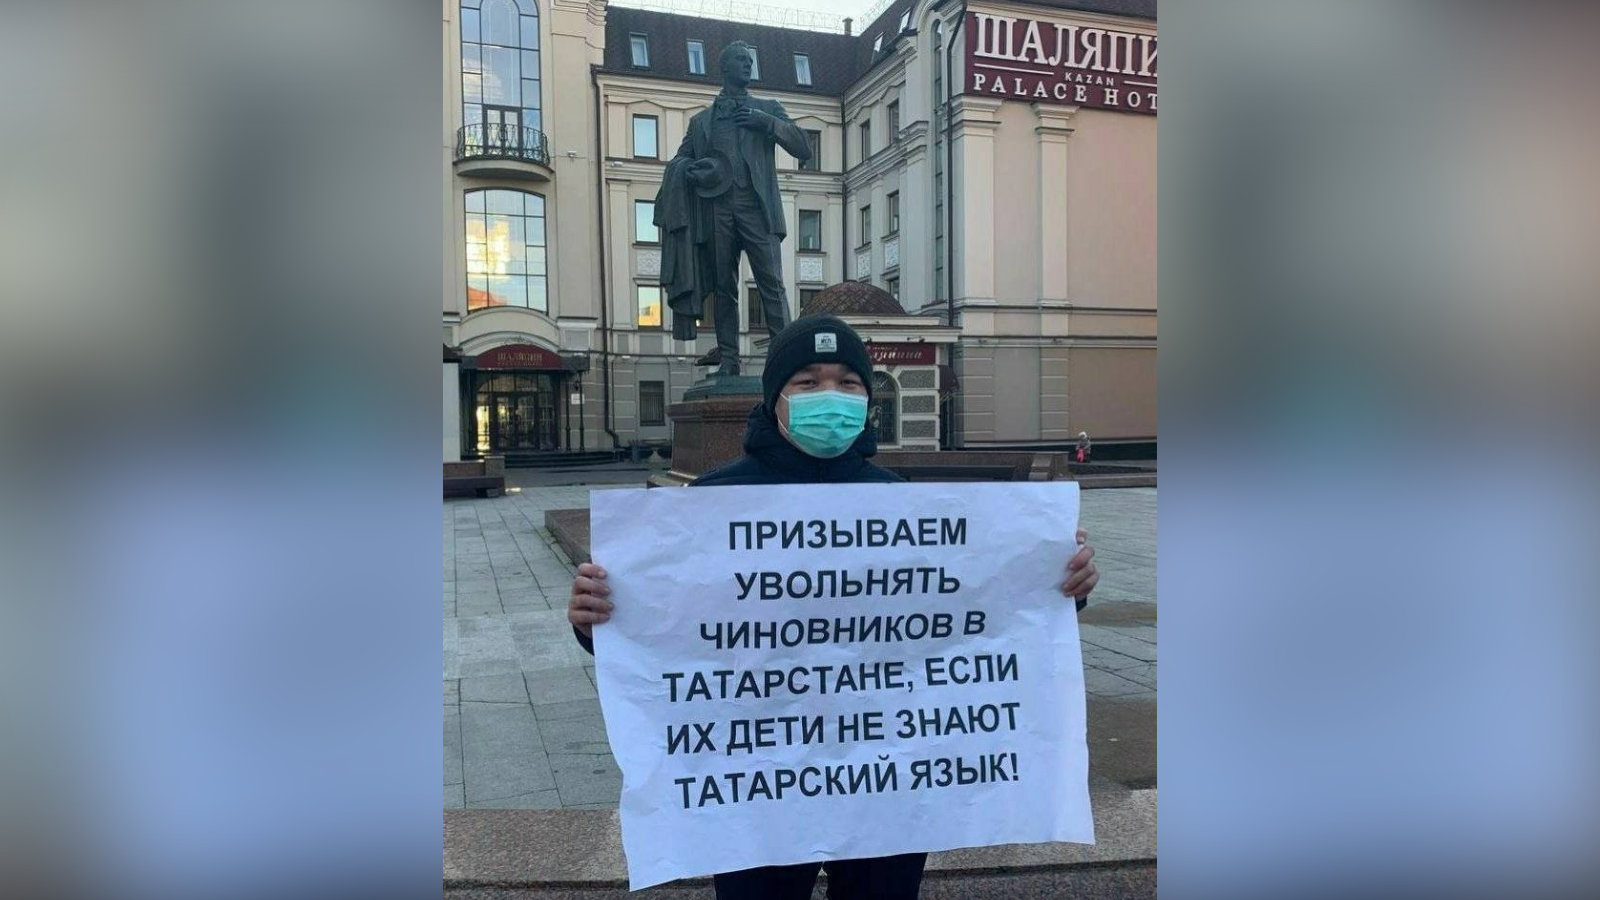 Kazanyban pikettet tartottak azon tisztviselők elbocsátását követelve, akiknek gyermekei nem tudnak tatár nyelvet